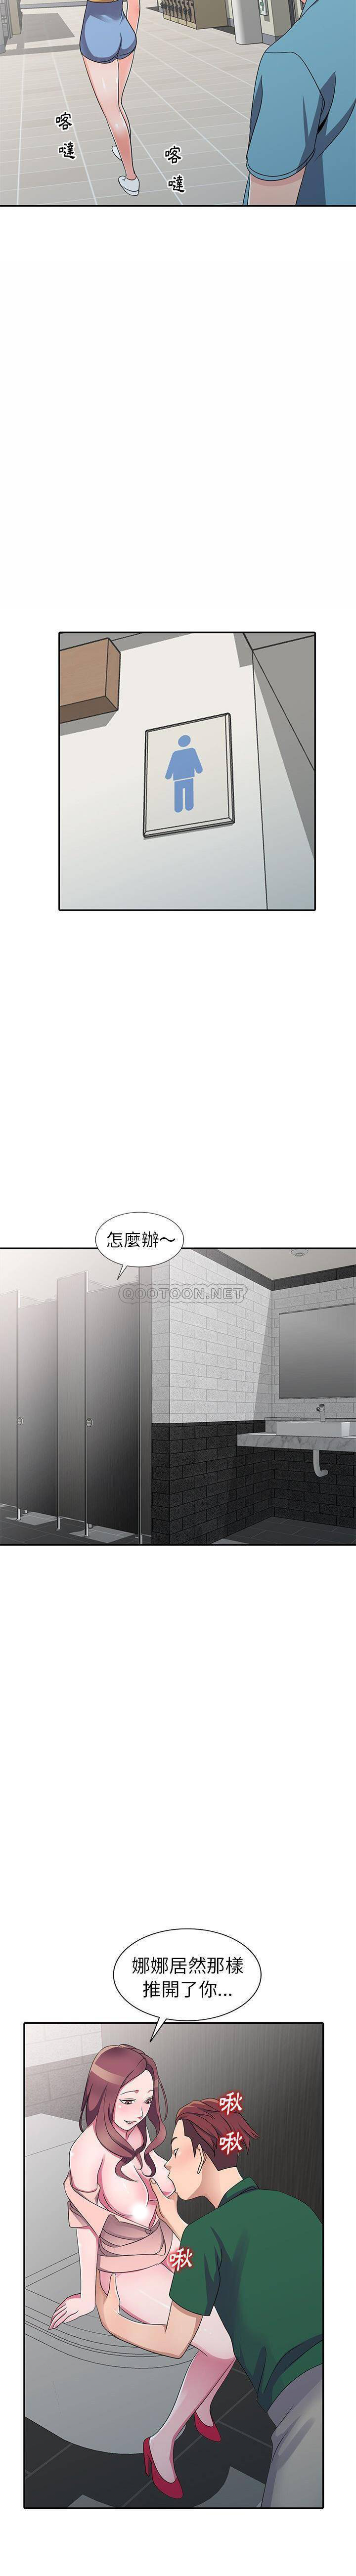 韩国污漫画 愛的第一課 第12话 16